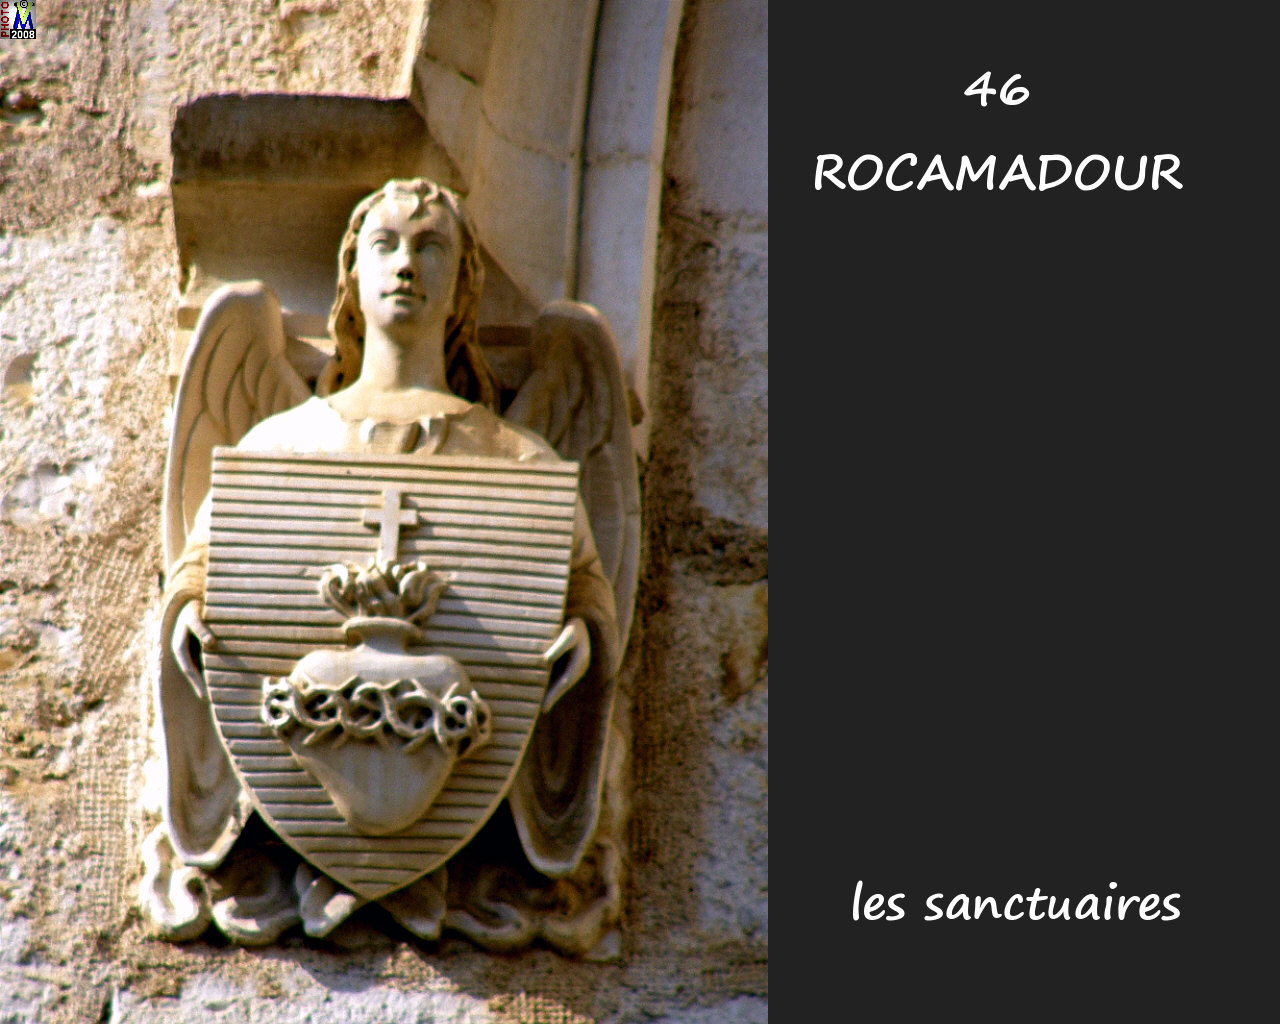 46ROCAMADOUR_sanctuaires_258.jpg